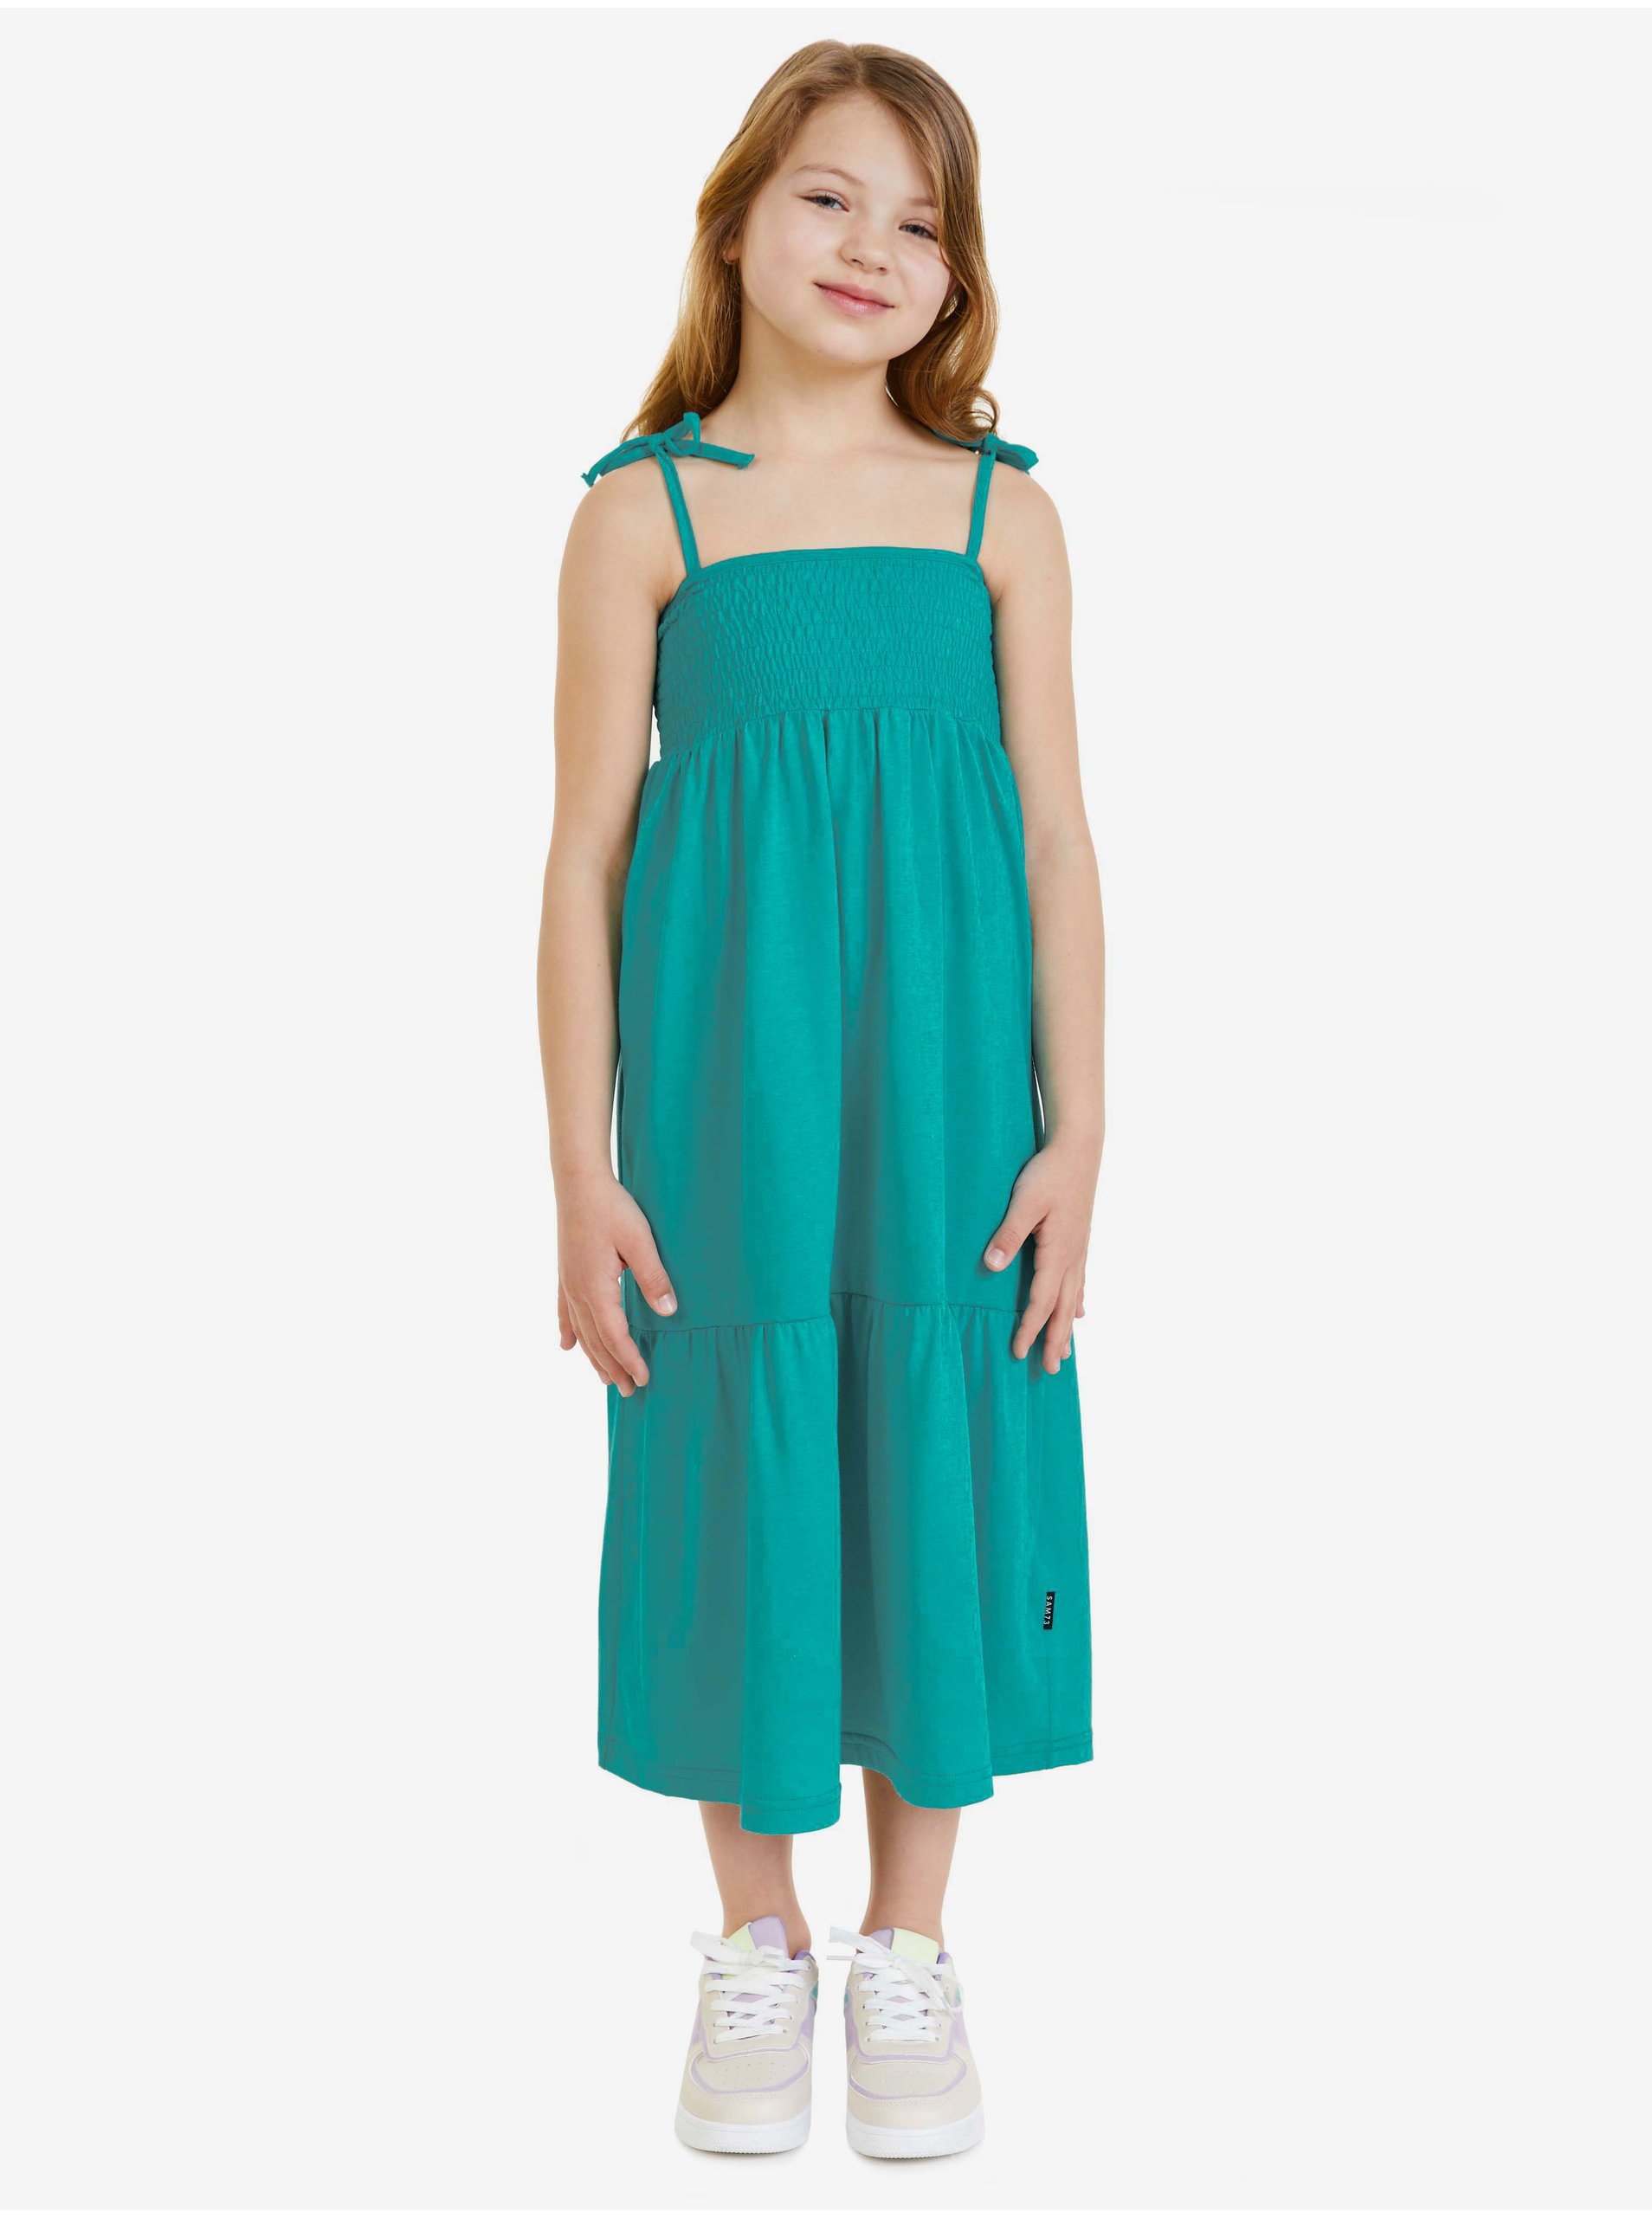 E-shop Petrolejové holčičí šaty SAM 73 Charity